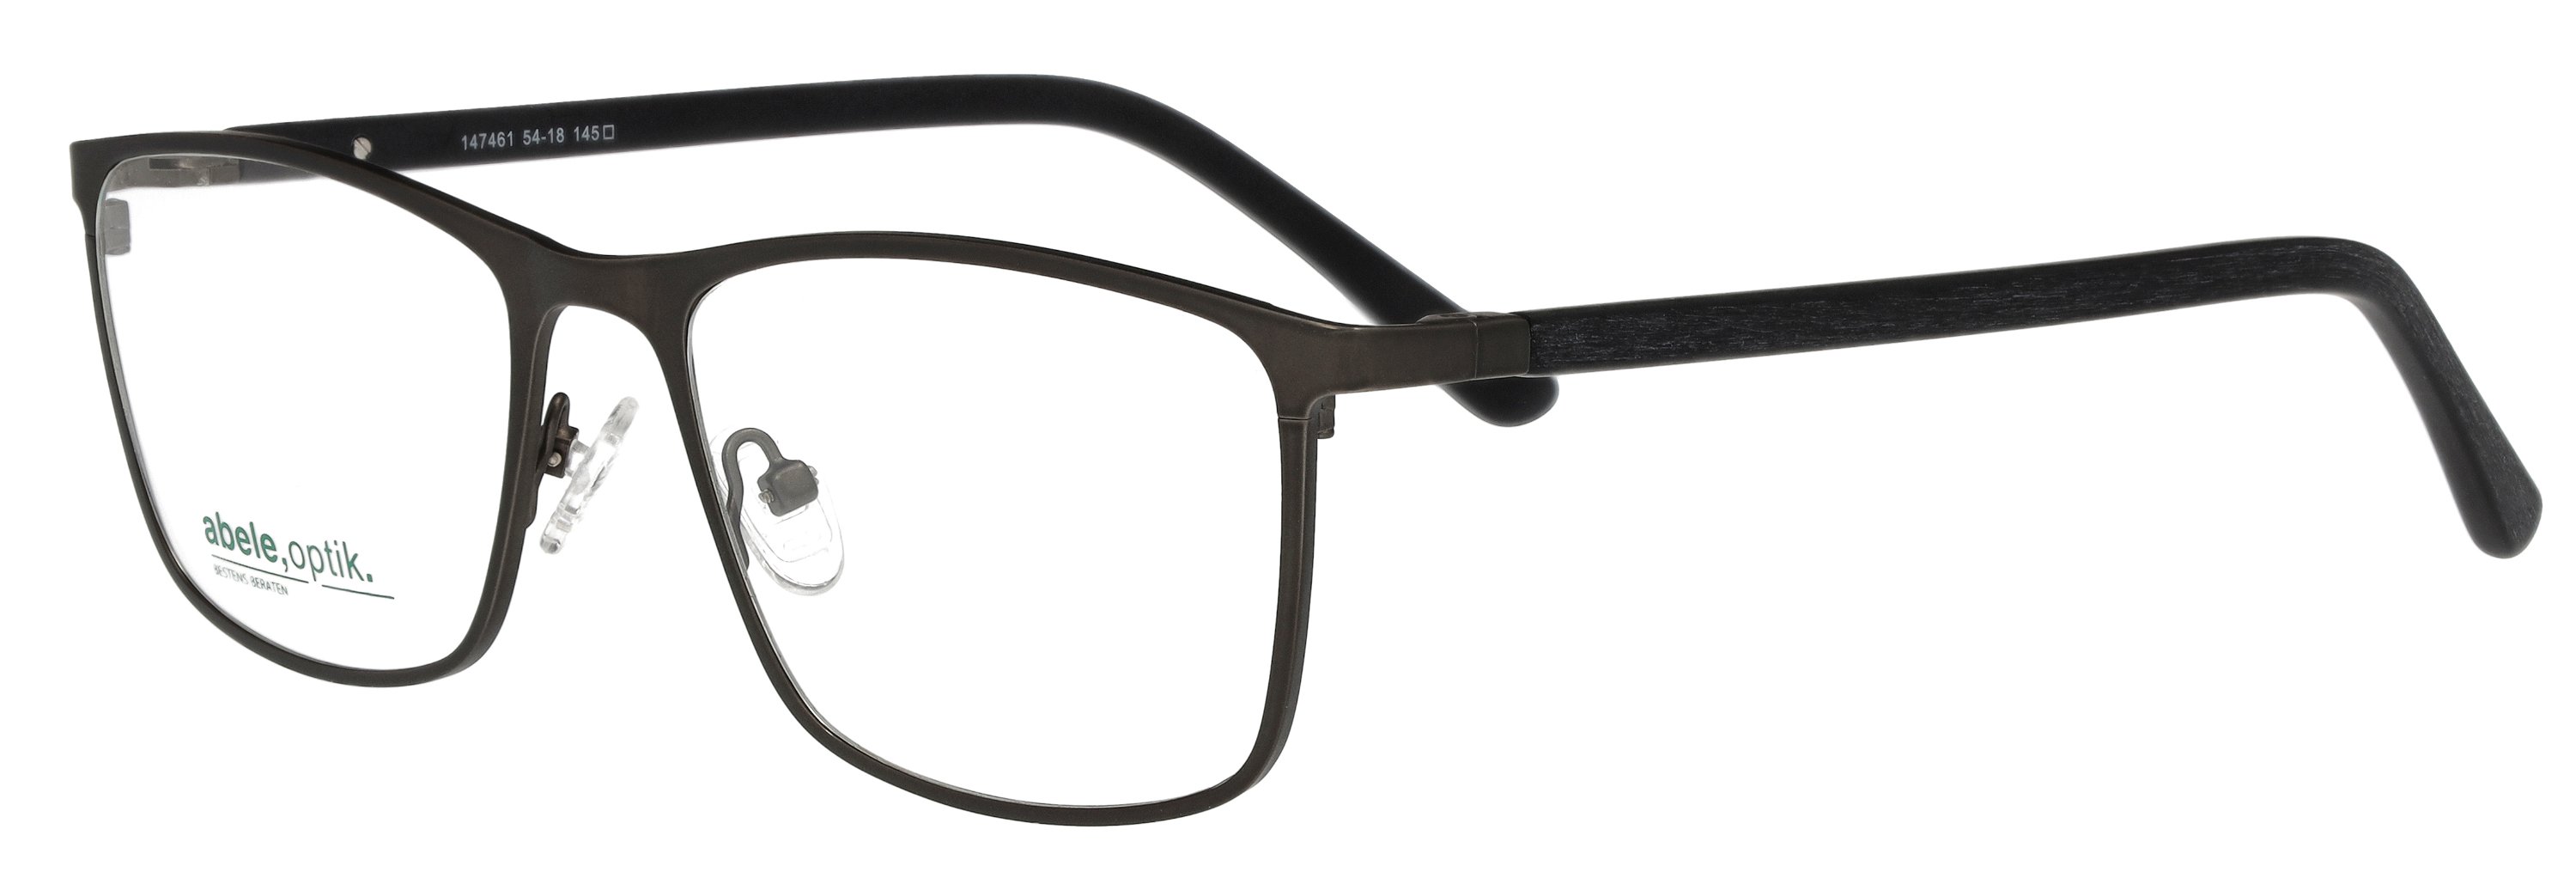 abele optik Brille für Herren in silbergrau matt 147461